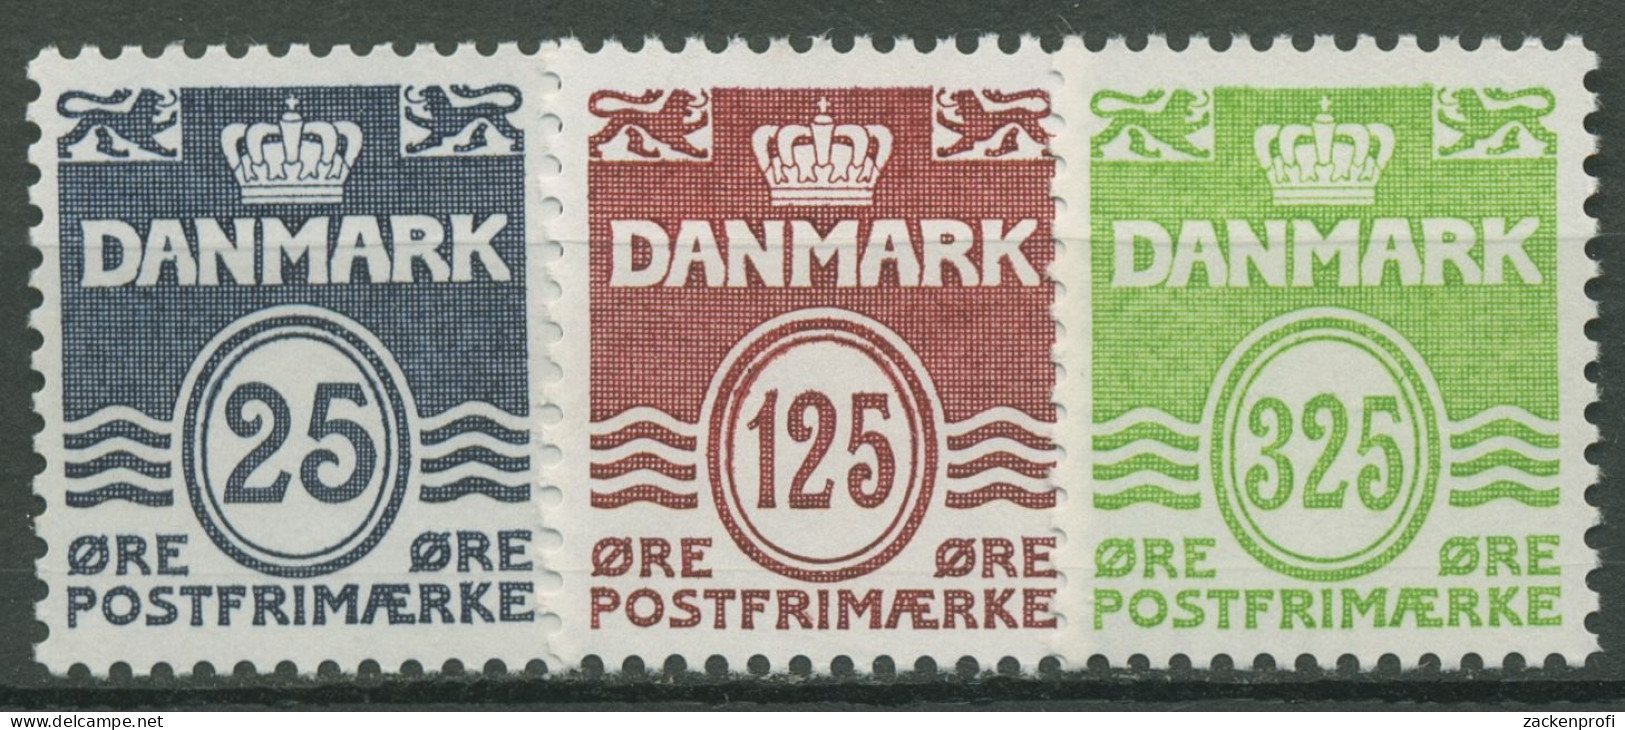 Dänemark 1990 Freimarken Wellenlinien 963/65 Postfrisch - Neufs